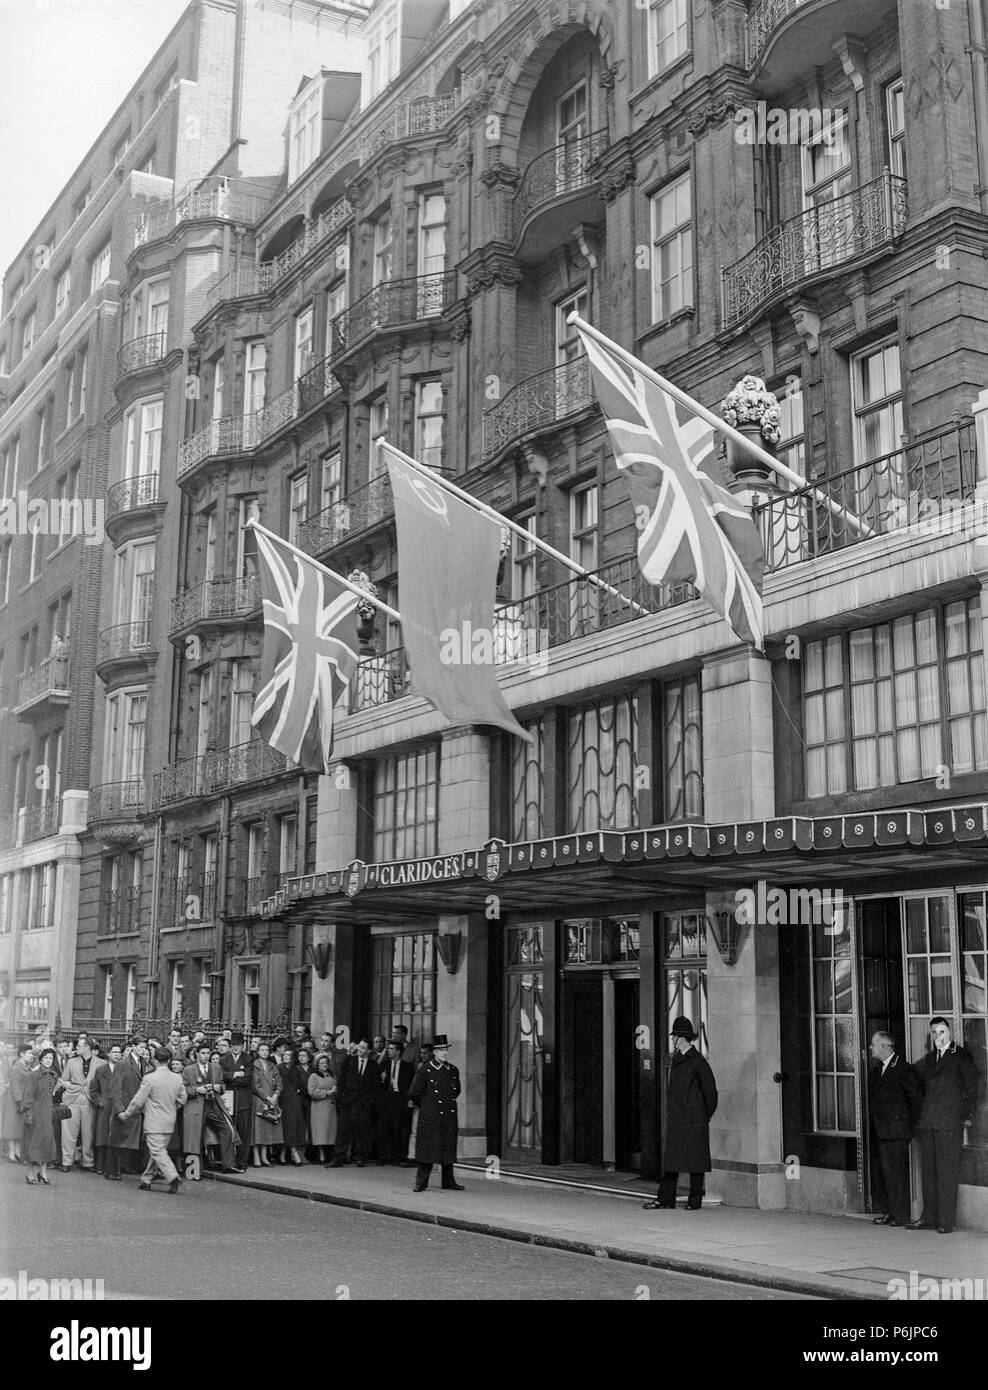 La parte anteriore del Claridges Hotel a Londra durante gli anni cinquanta. I membri del pubblico e cameramen in attesa dell'arrivo di una persona famosa. Foto Stock